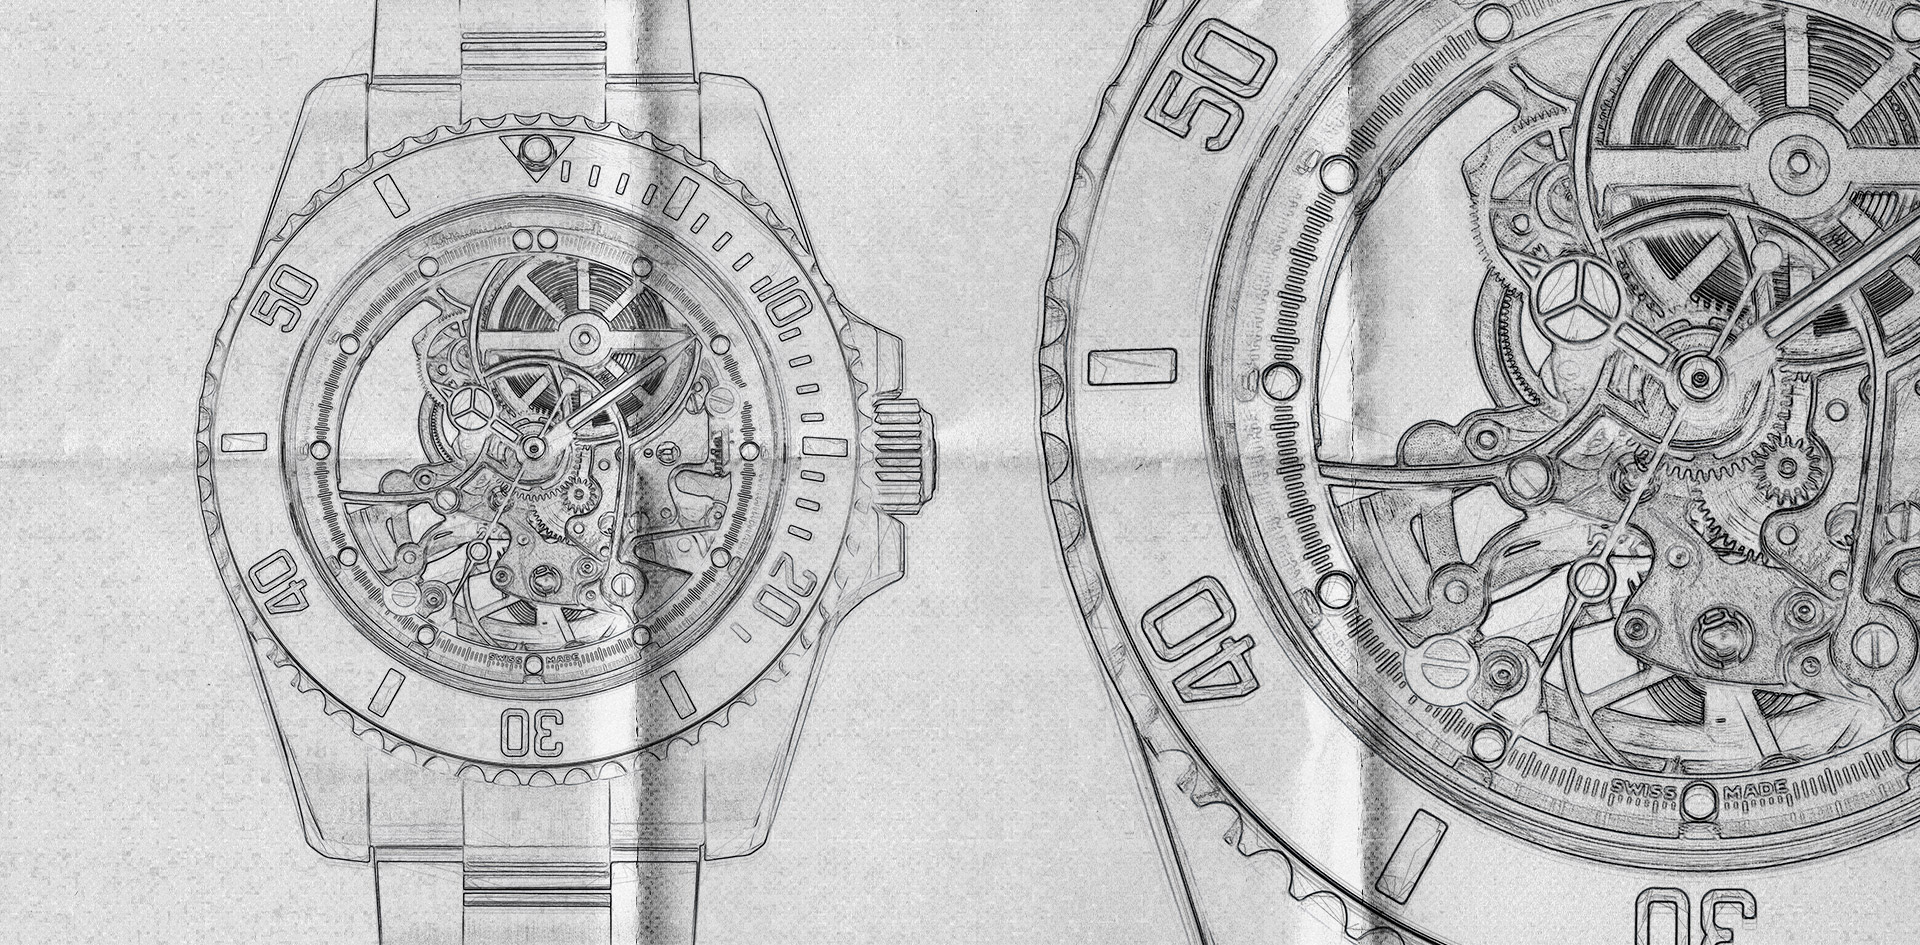 Andrea Pirlo's watch sketch submariner